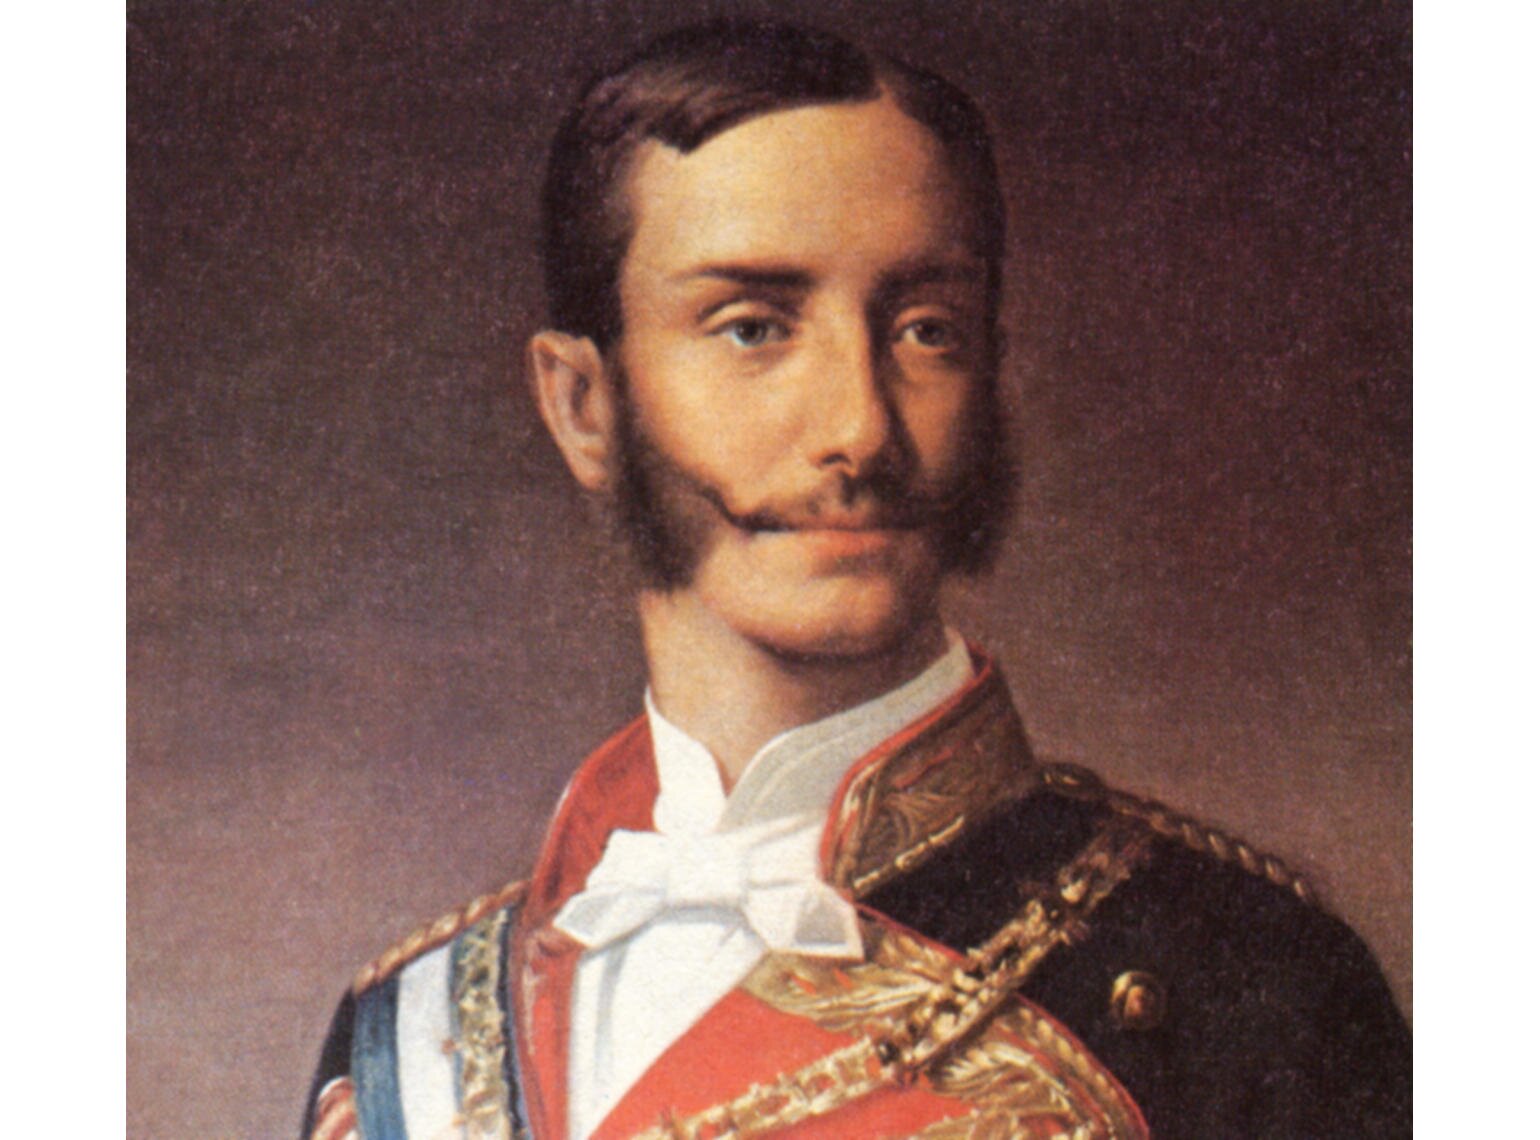 Nací en el Palacio Real de Madrid el 28 de noviembre de 1857 y morí en El Pardo, 25 de noviembre de 1885. Fue rey de España entre 1874 y 1885.